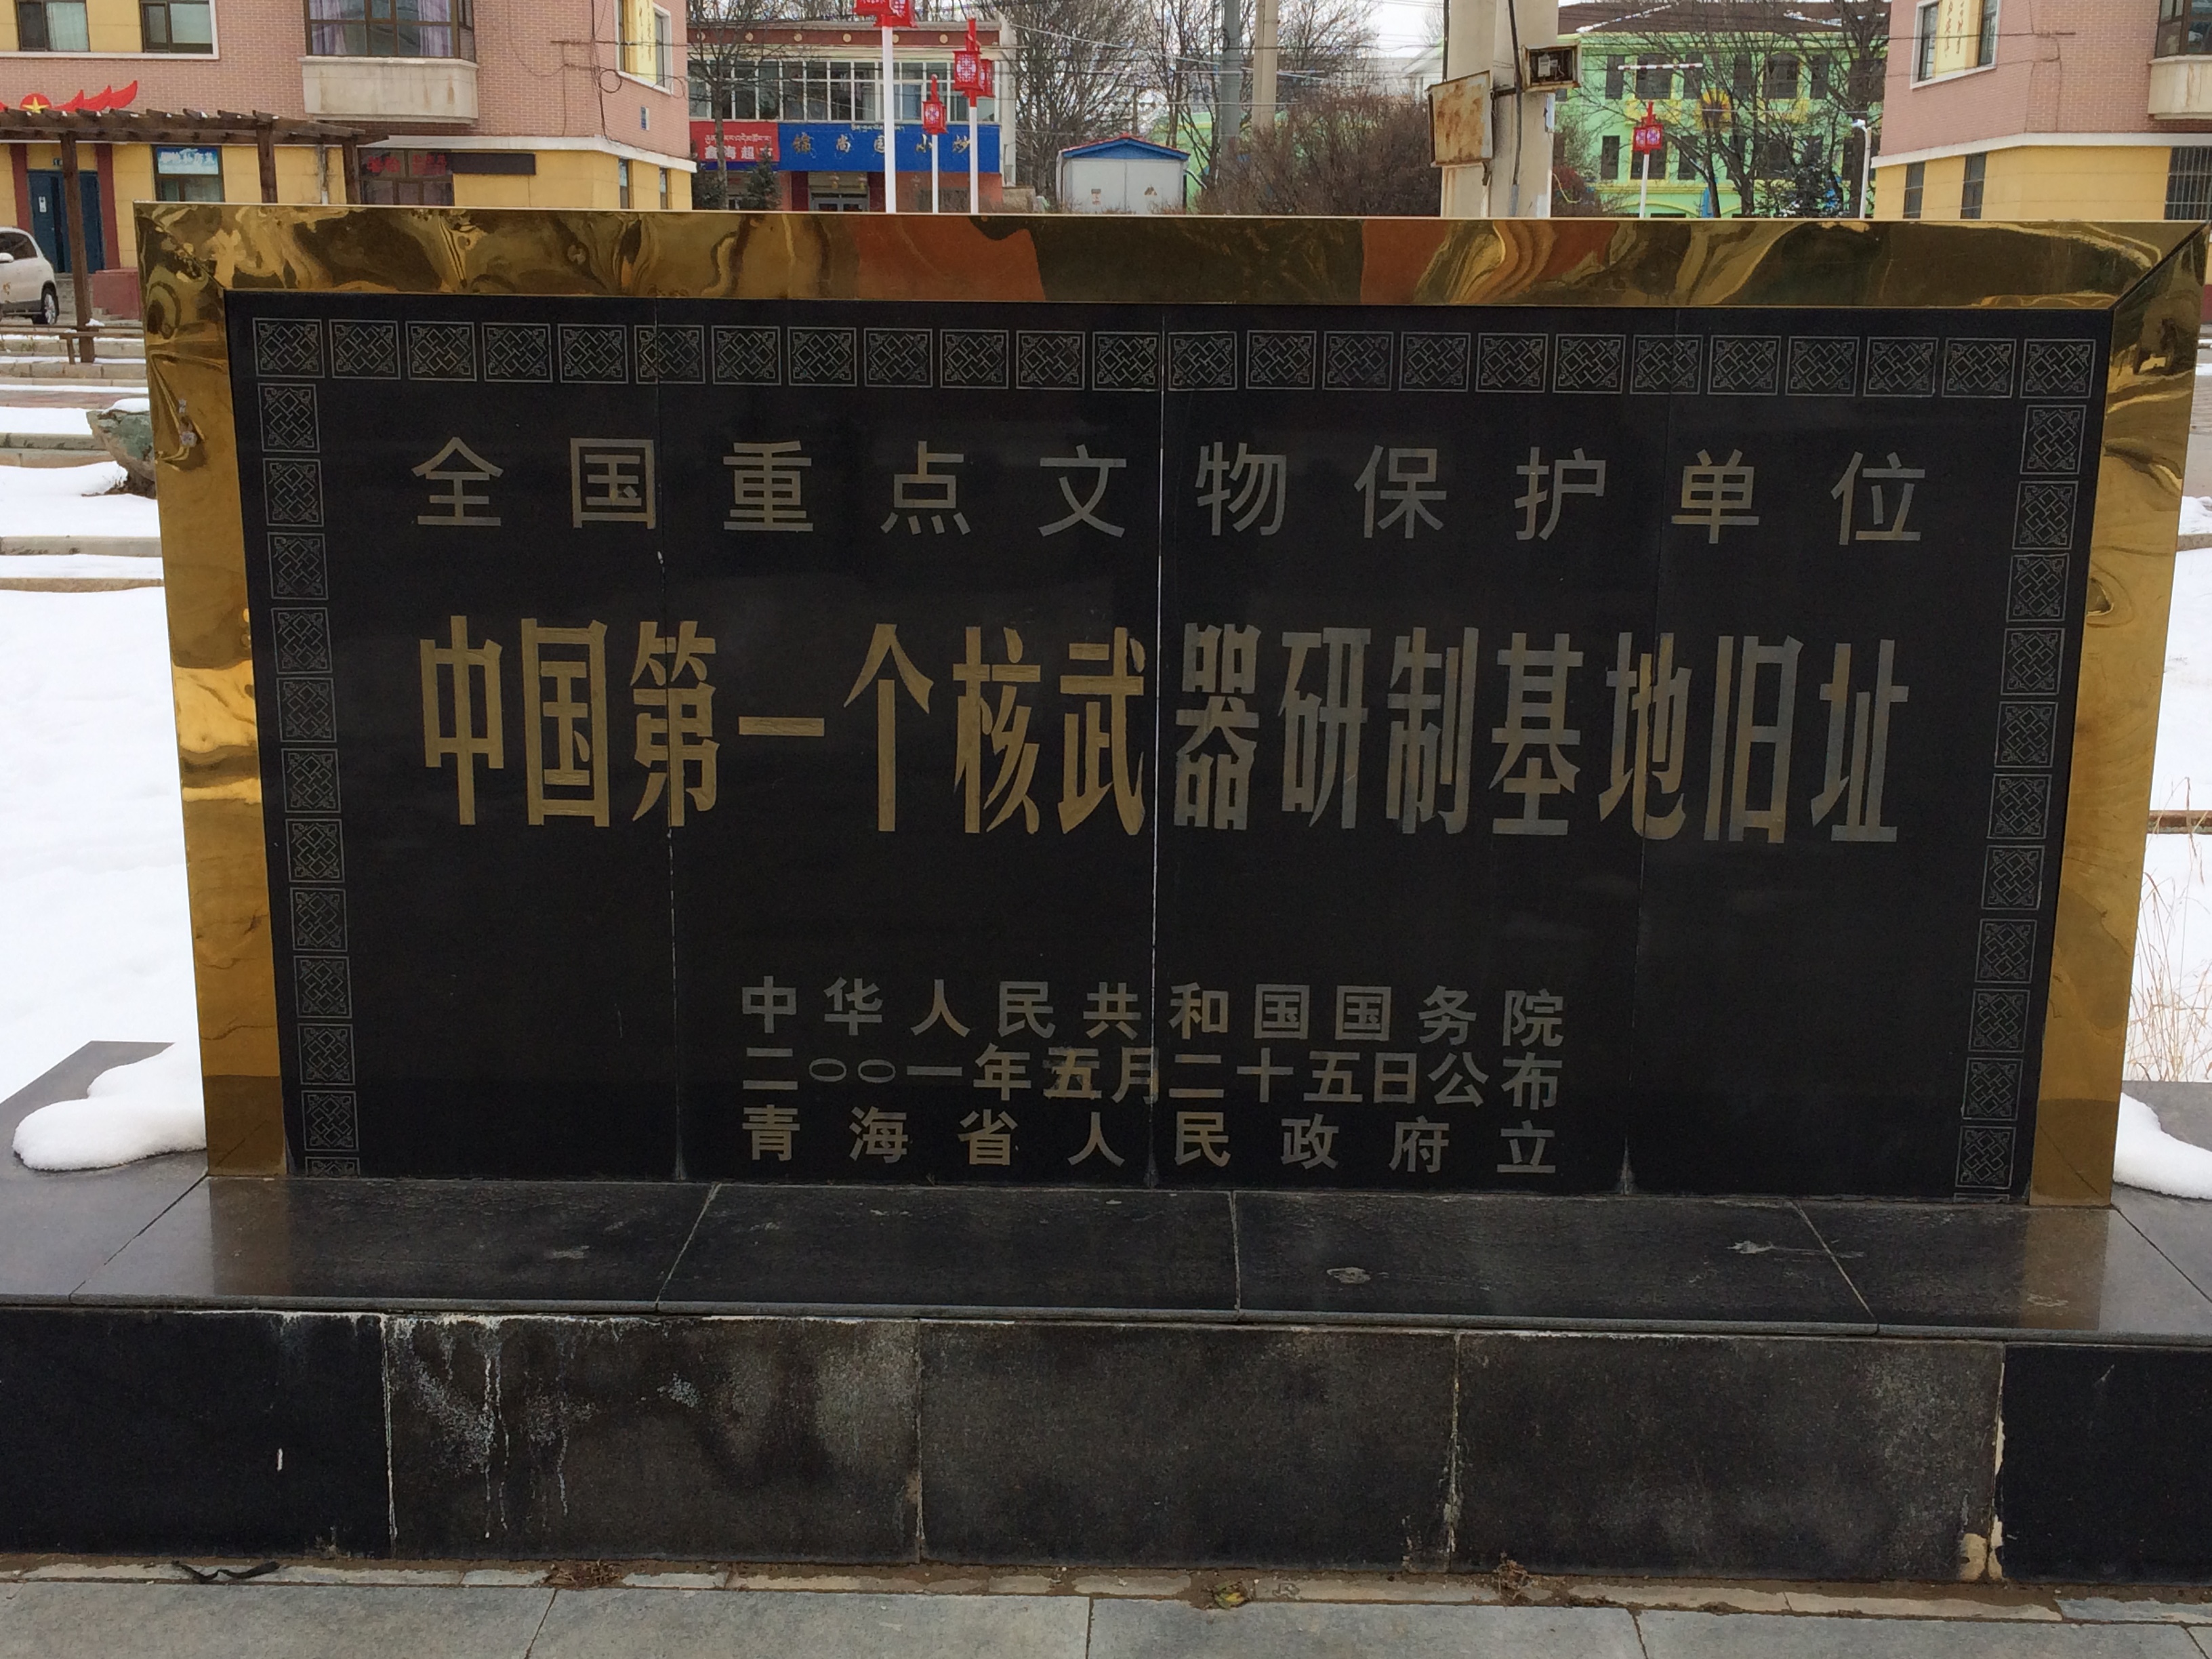 中国原子城站图片